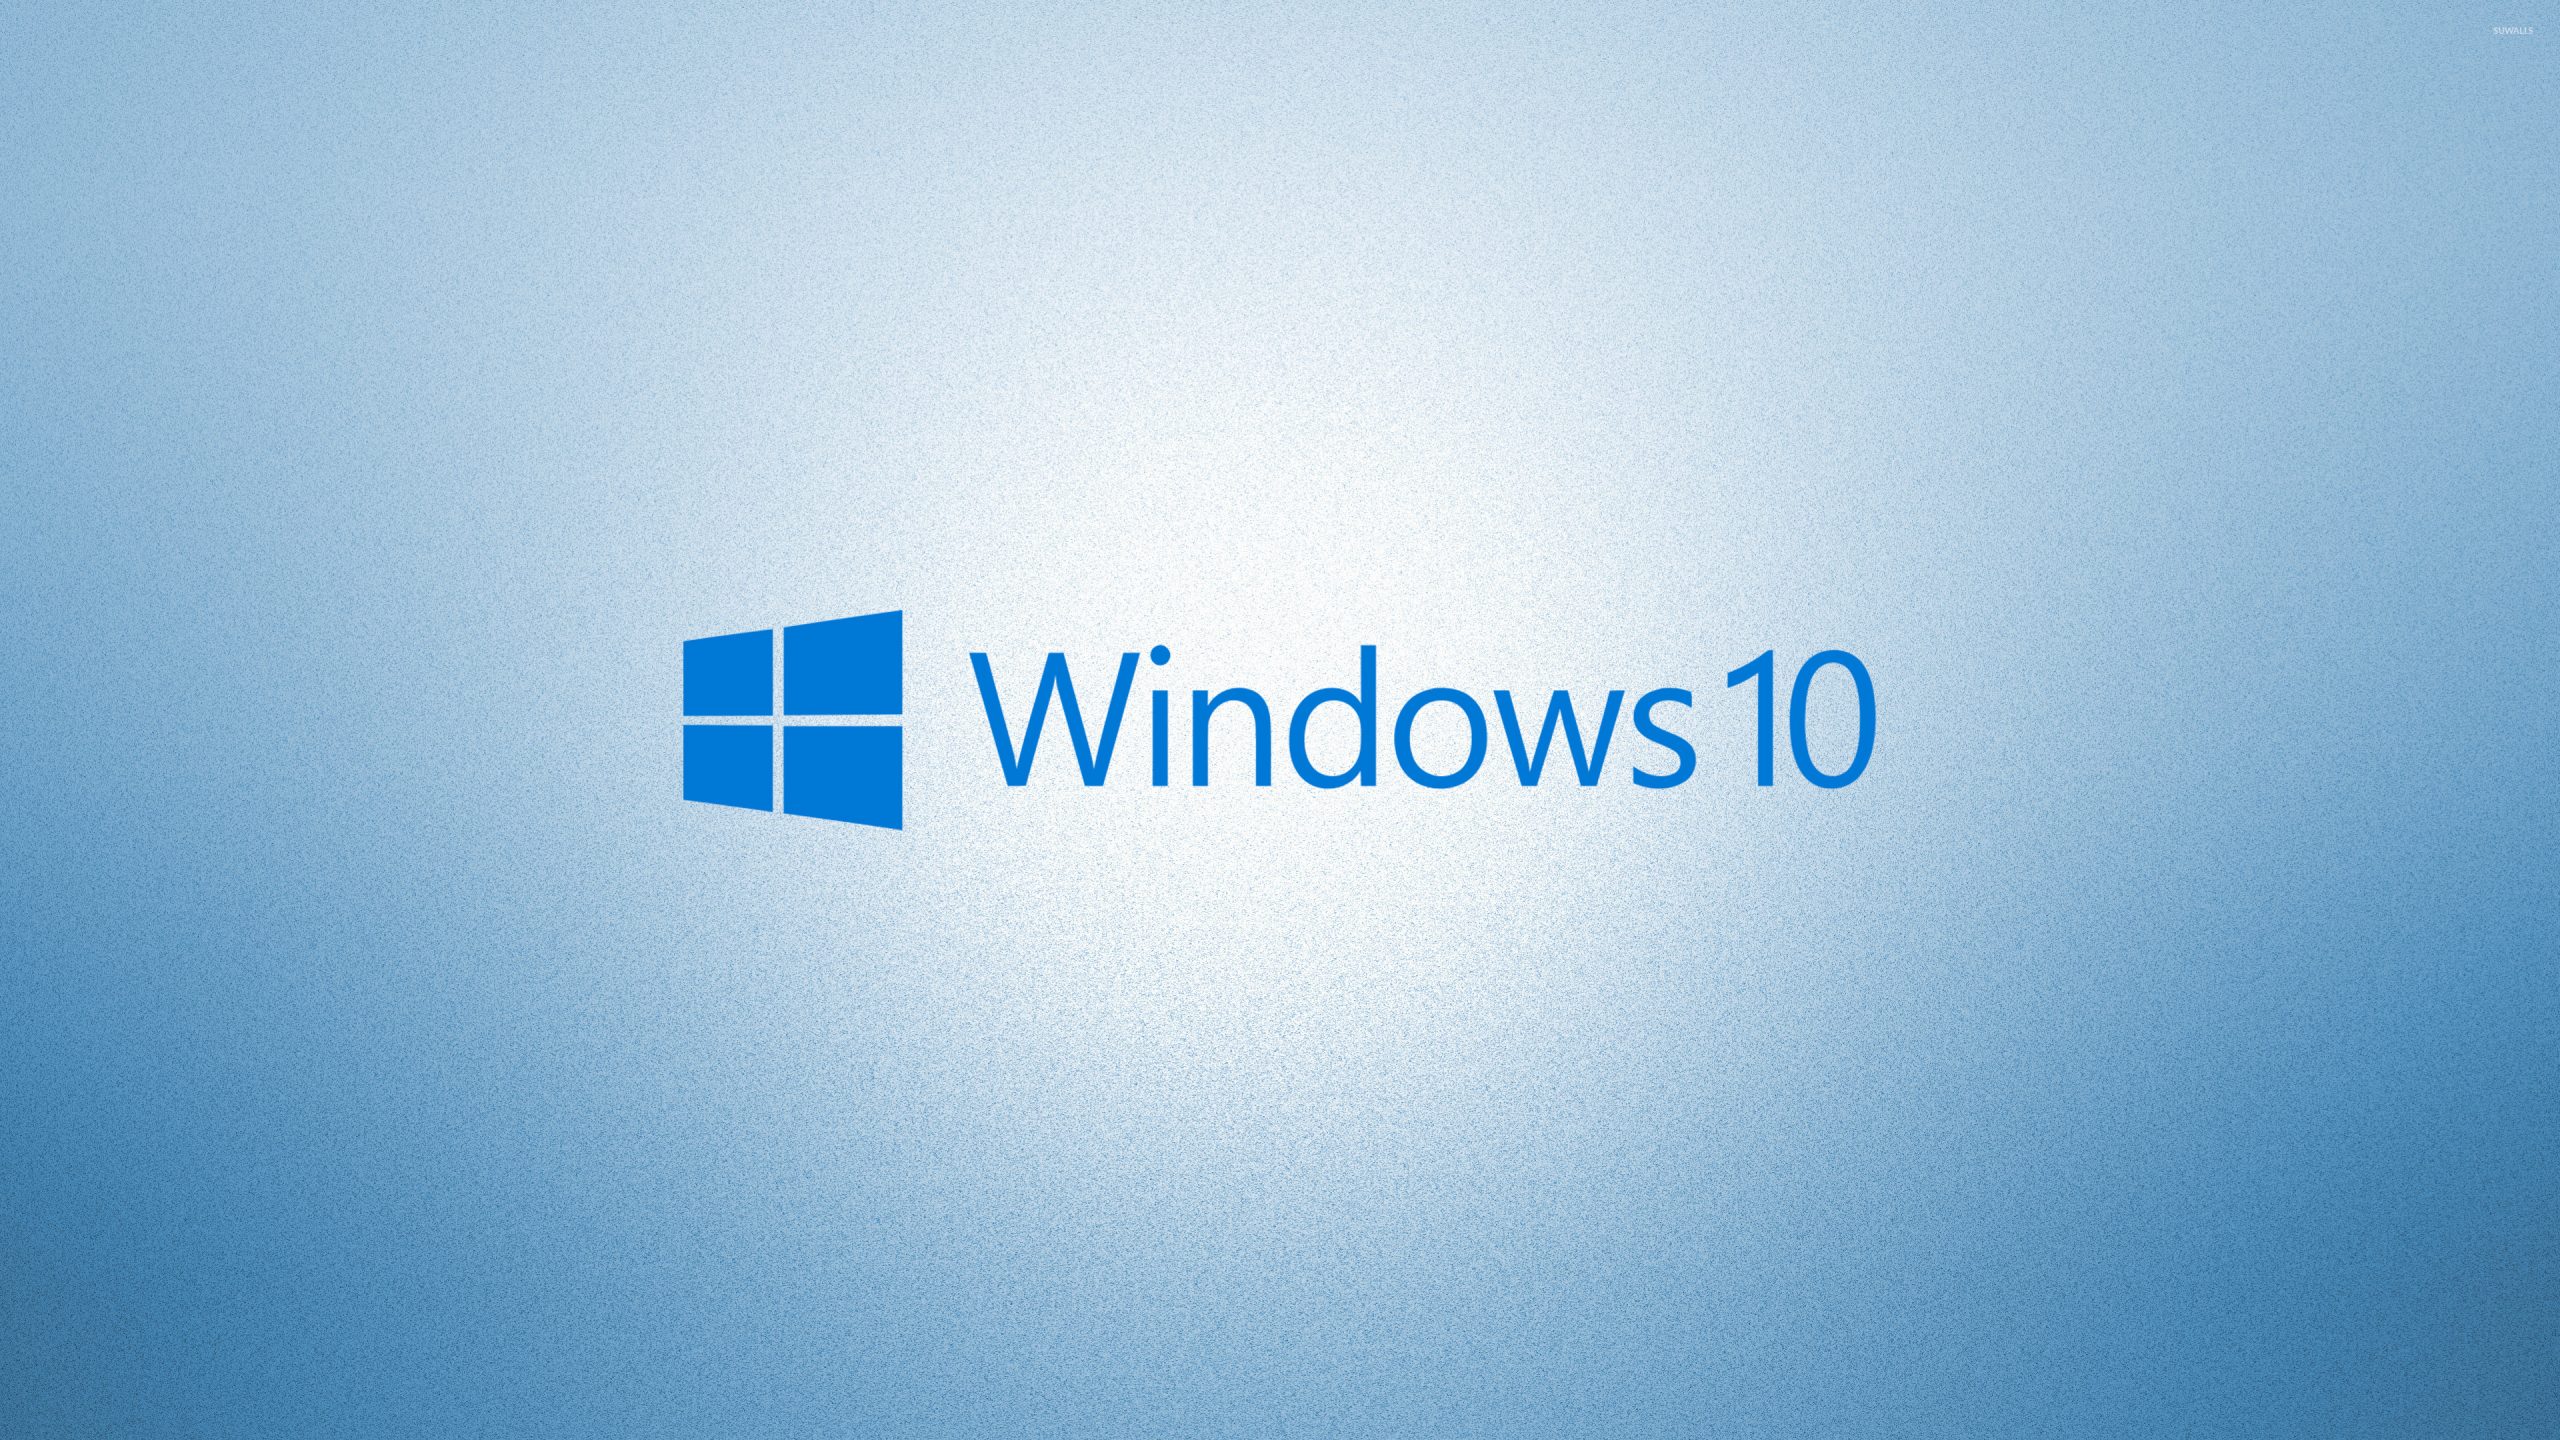 Картинки виндовс 10. Виндовс. Виндовс 10. Рабочий стол Windows 10. Фон виндовс 10.